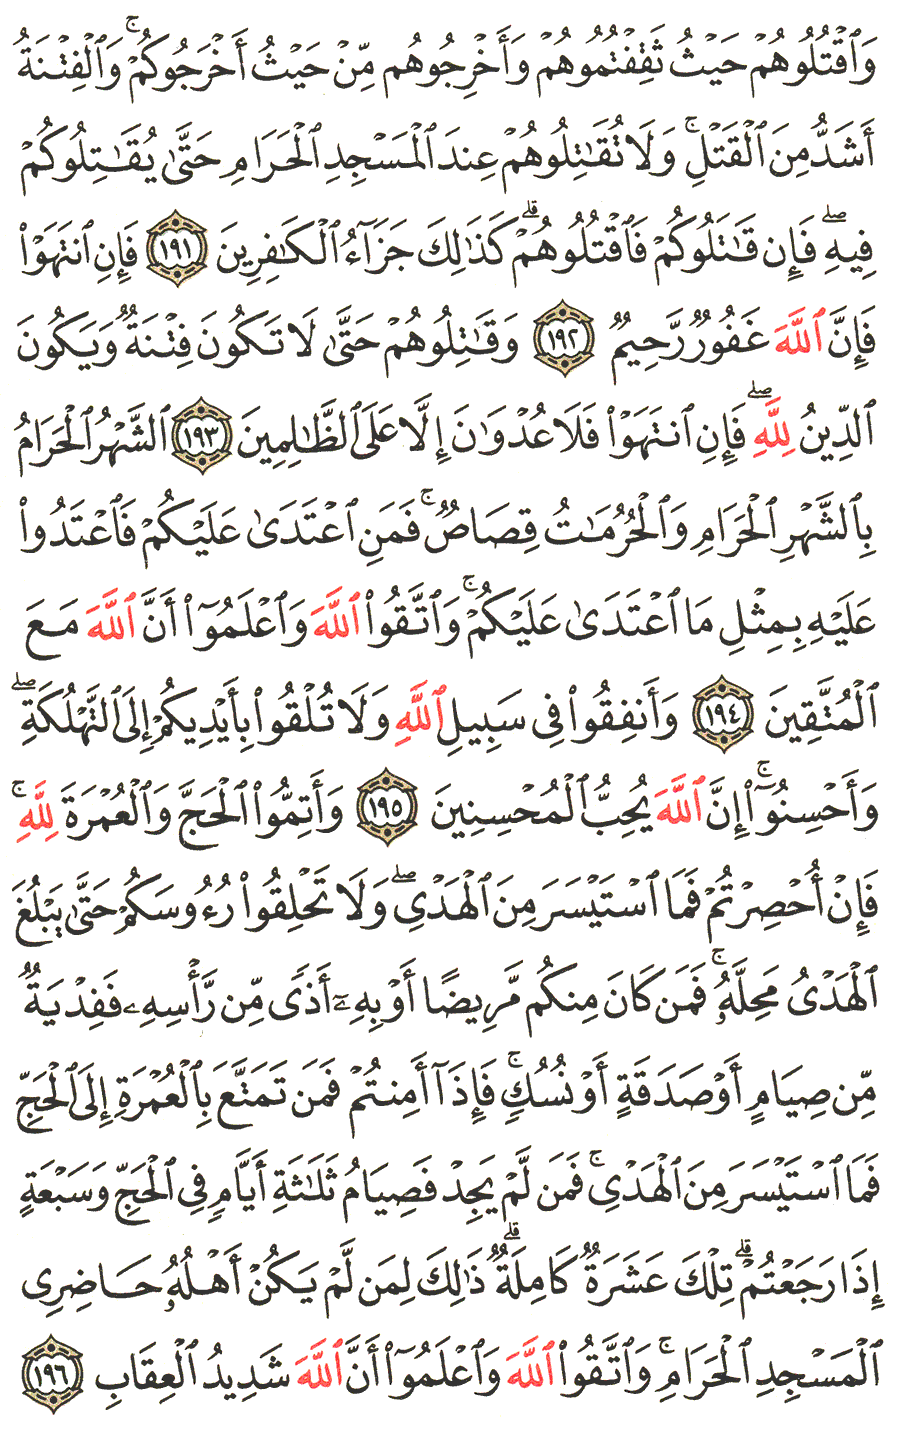 الصفحة 30 من القرآن الكريم